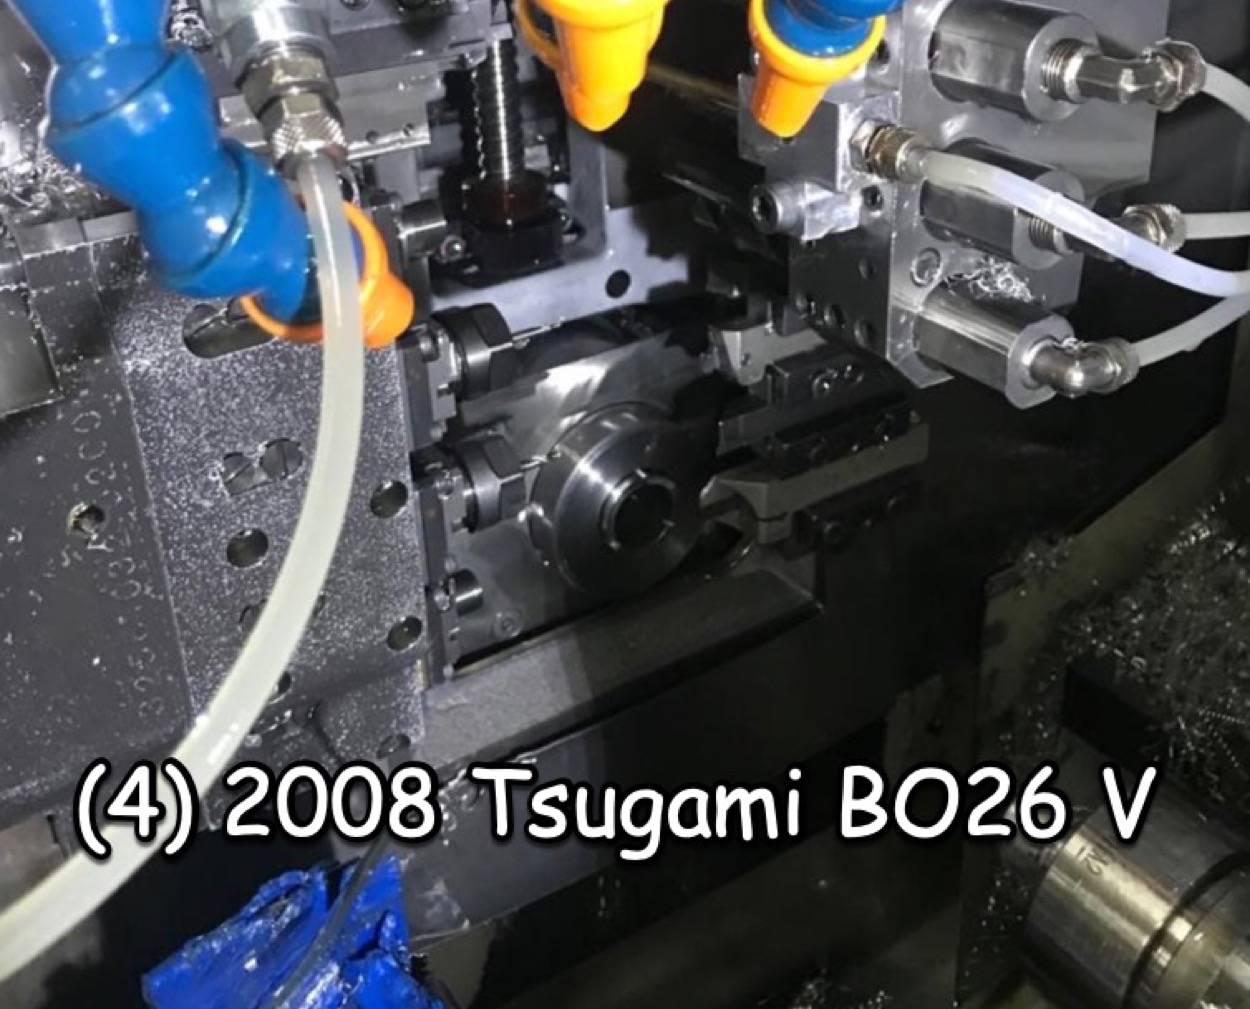 Tsugami BO26 V 2008